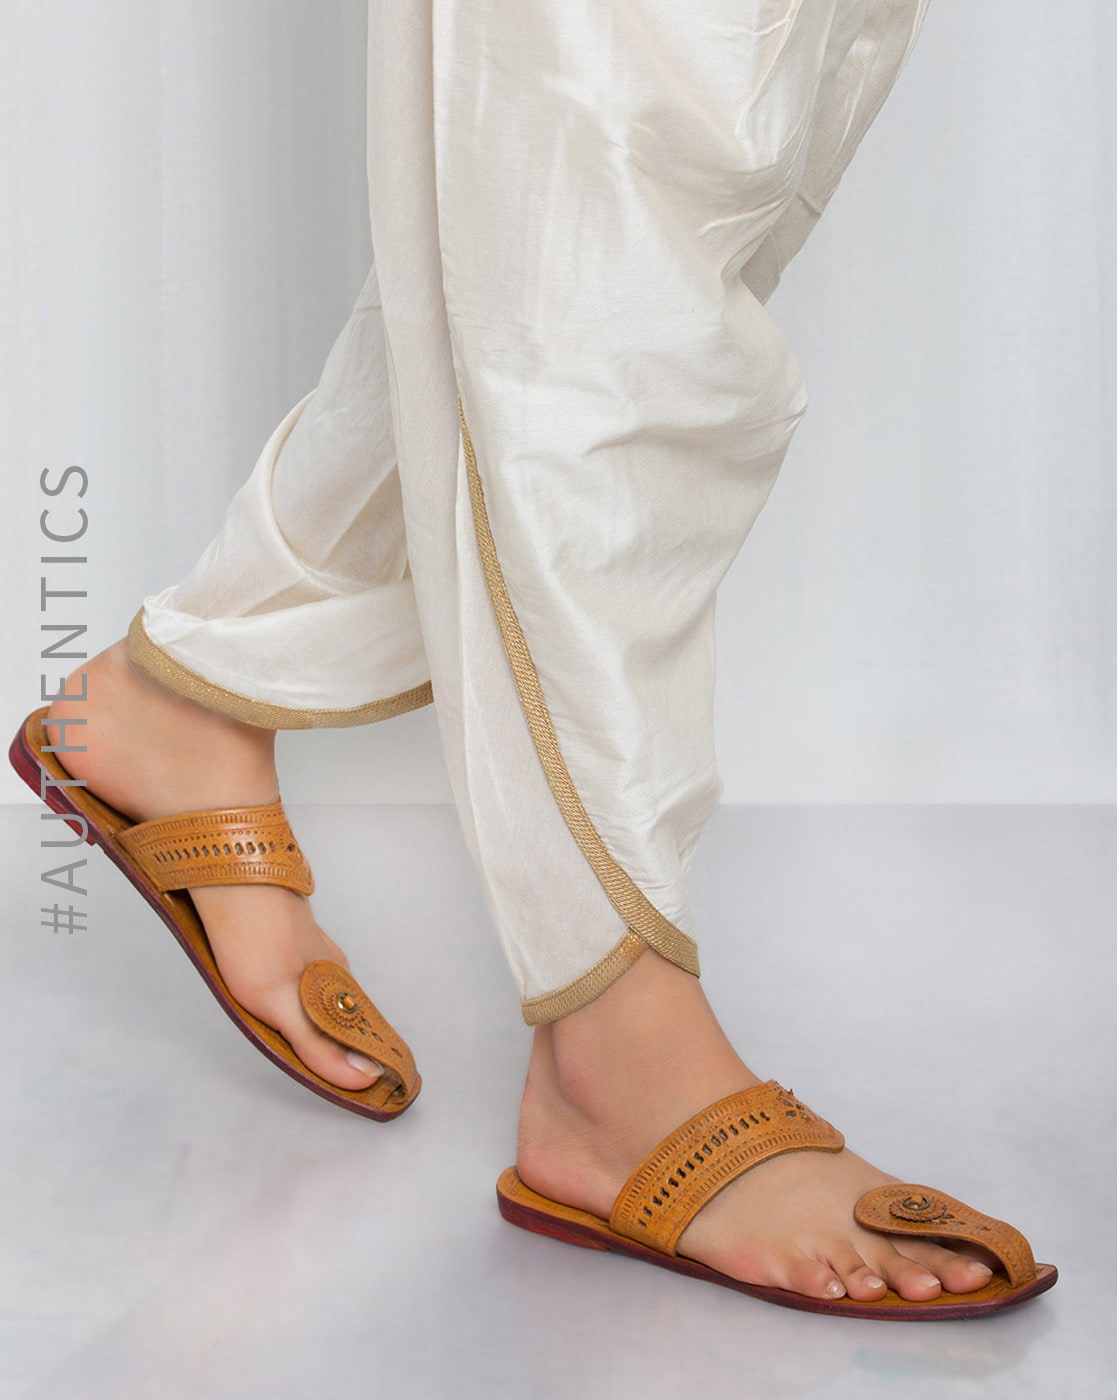 khadau slippers online